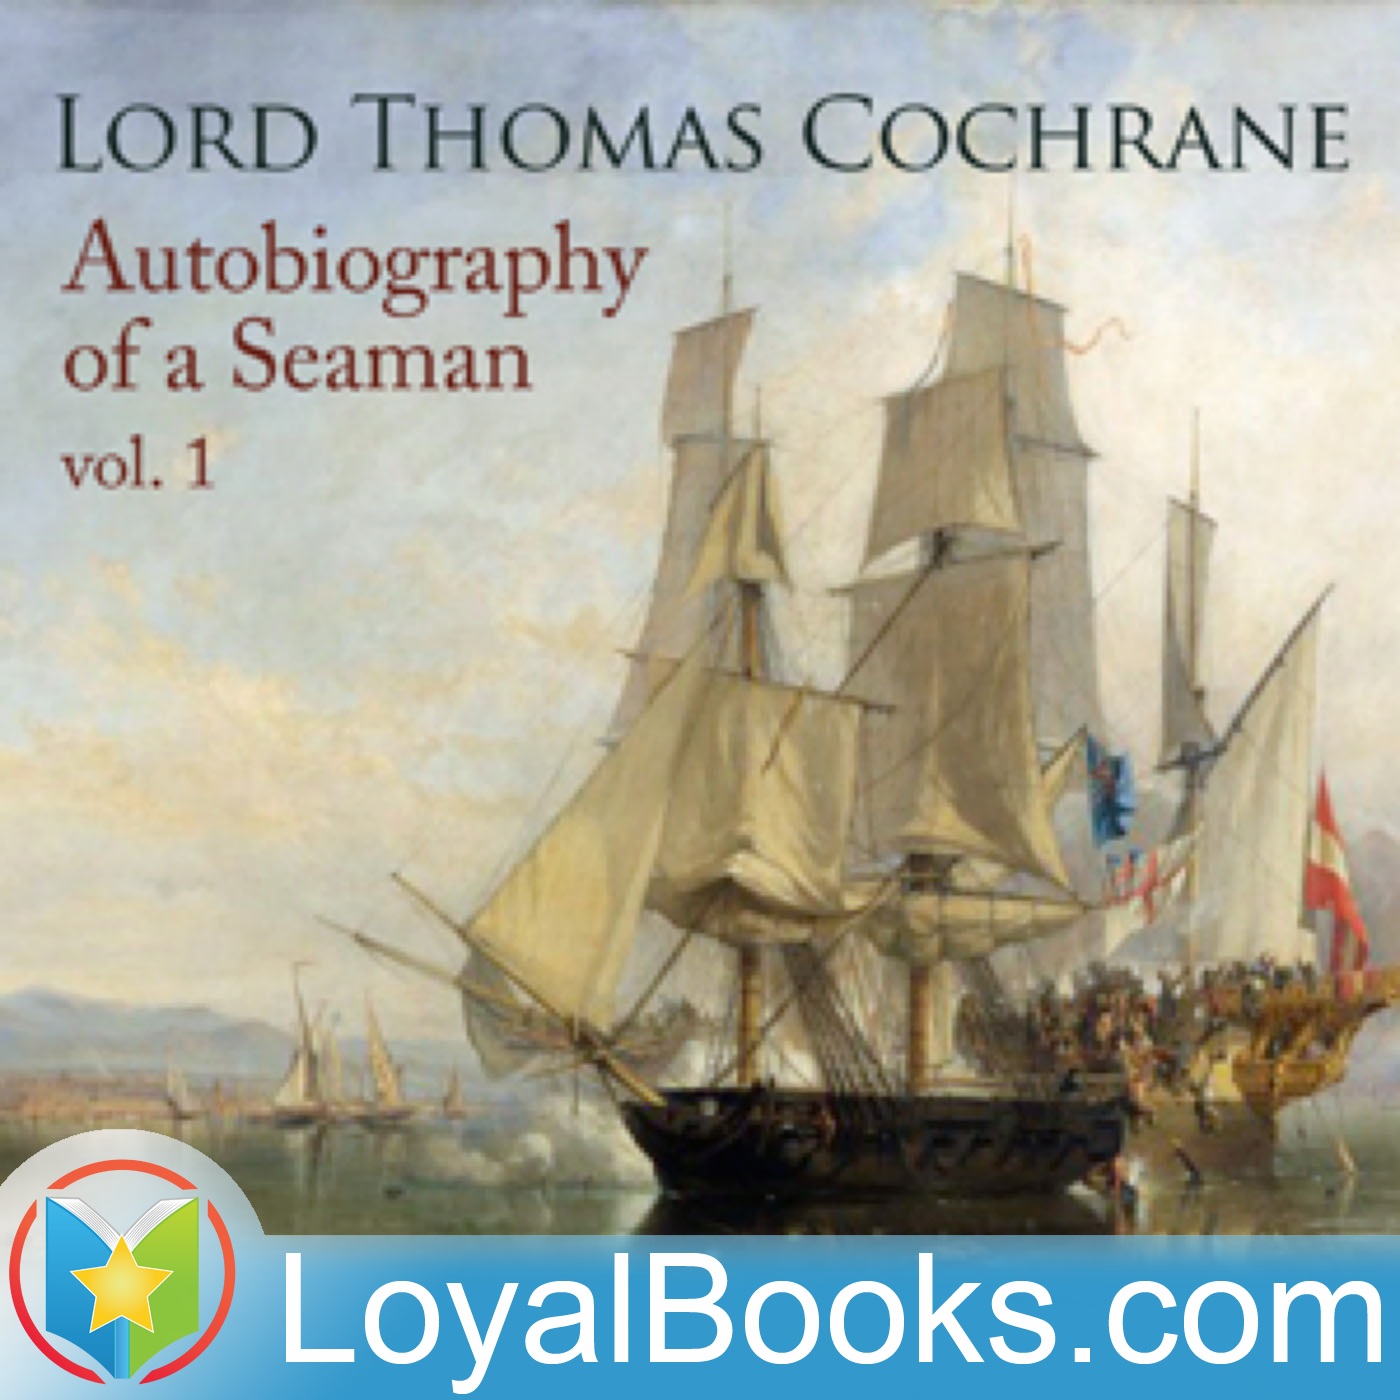 Autobiography of a Seaman, Vol. 1 by Lord Thomas Cochrane